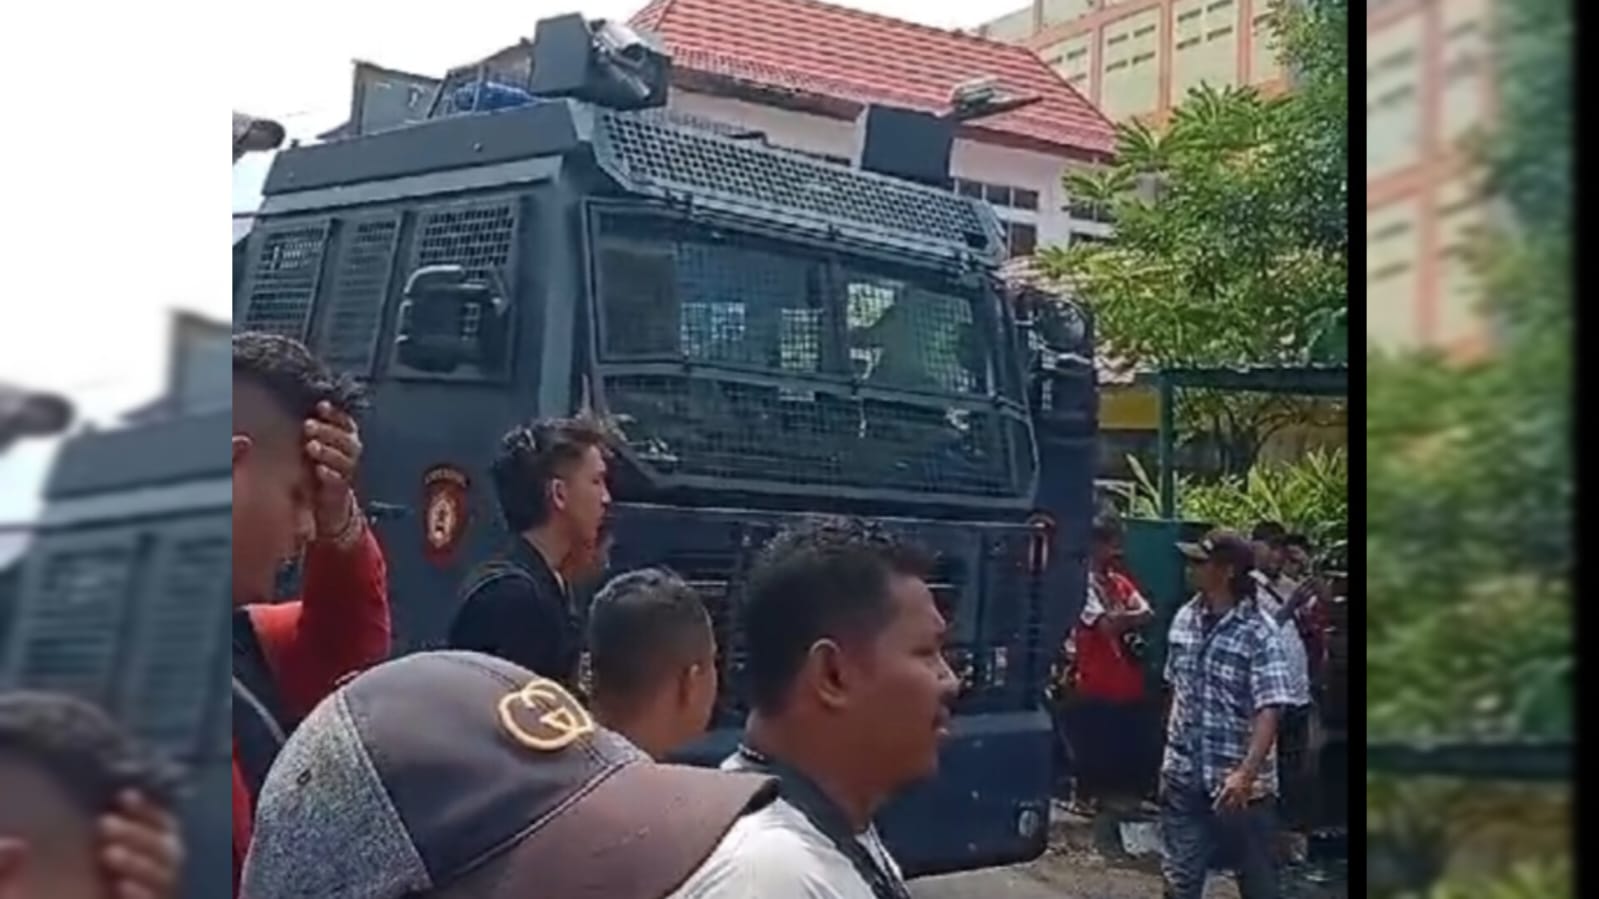 Kebakaran Belakang Koramil Lubuk Linggau, Polisi Kerahkan Mobil Water Cannon